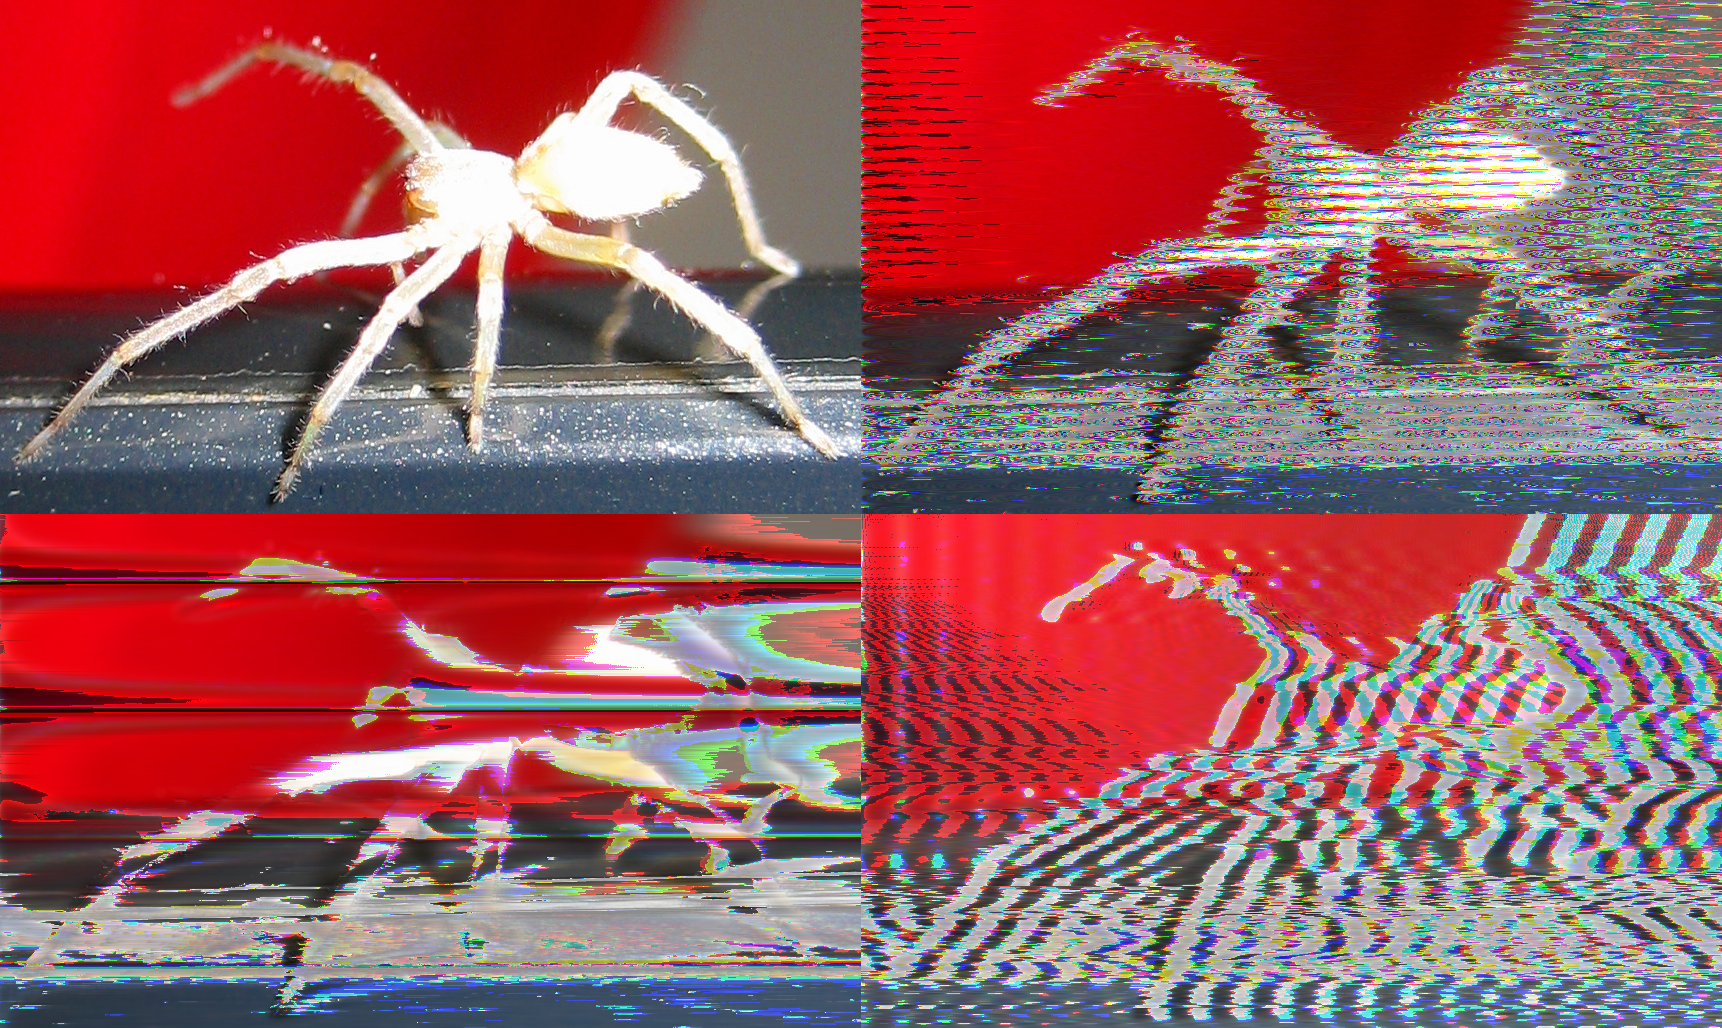 https://orig00.deviantart.net/8c42/f/2013/007/9/8/glitch_art_spider_by_qubodup-d5qqdkl.png